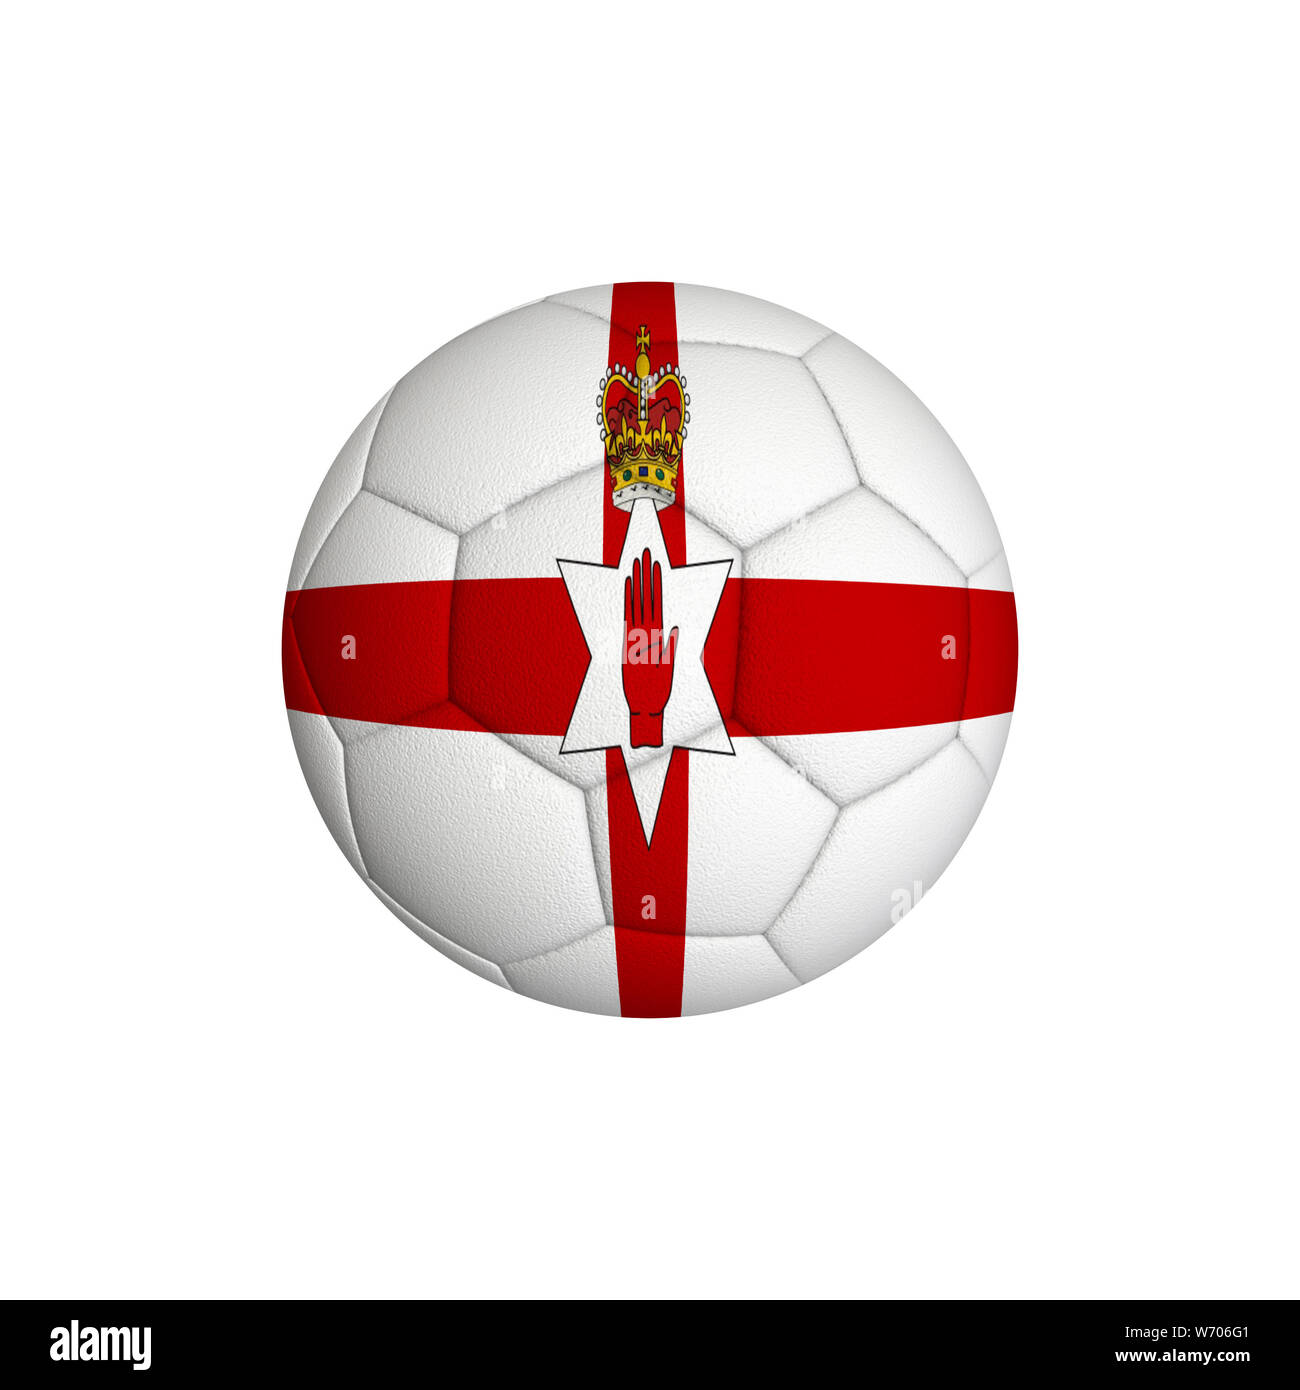 Pallone da calcio con la bandiera dell'Irlanda del Nord isolato su uno sfondo bianco Foto Stock